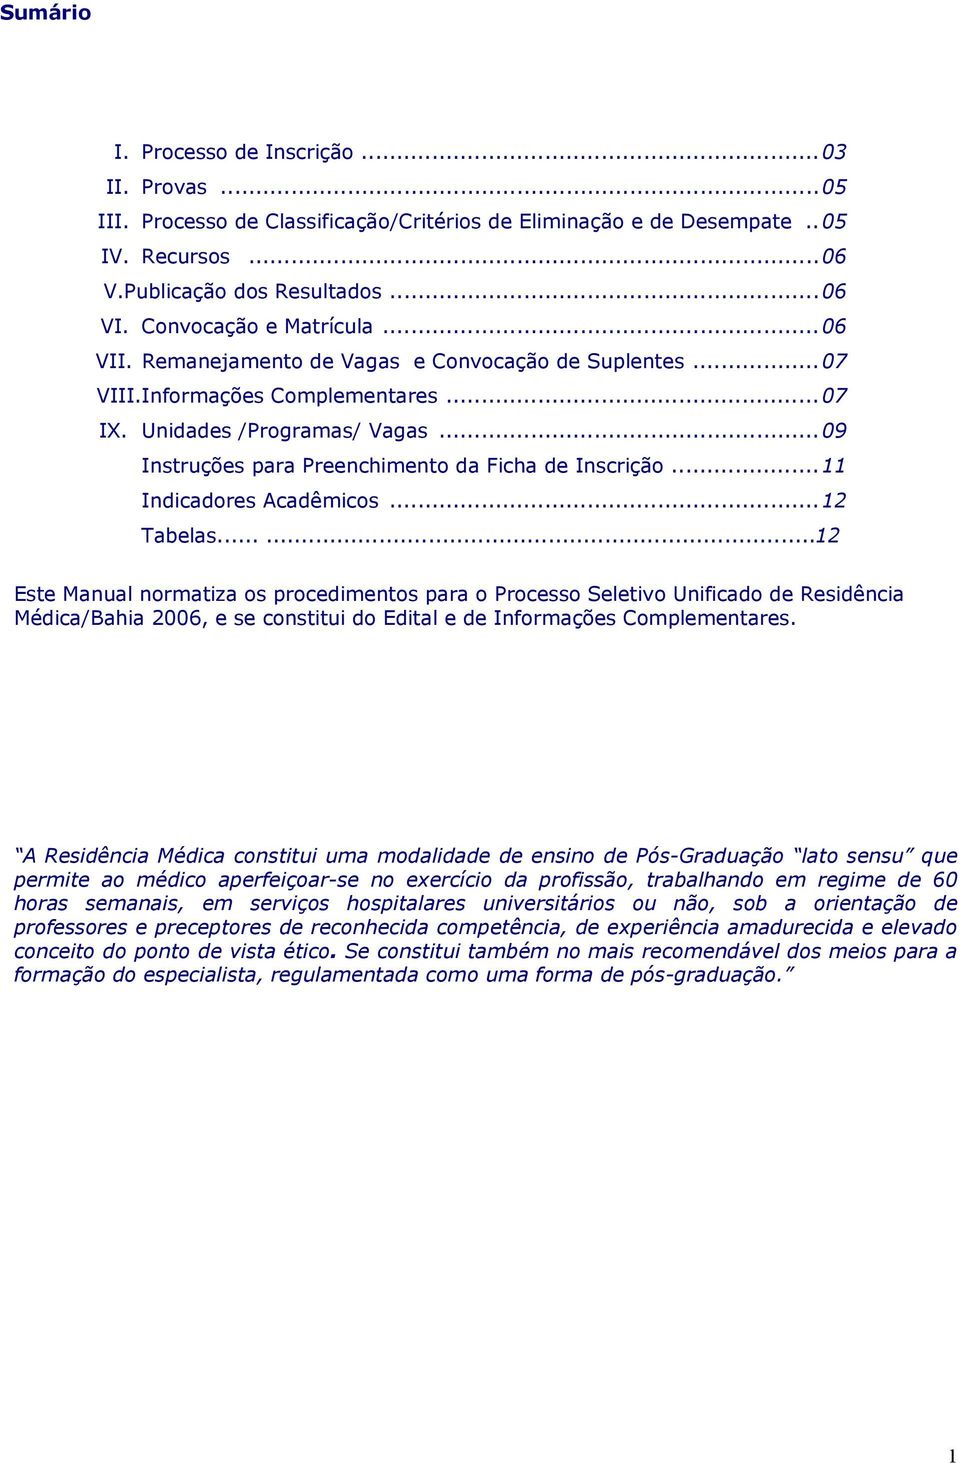 ..09 Instruções para Preenchimento da Ficha de Inscrição...11 Indicadores Acadêmicos...12 Tabelas.